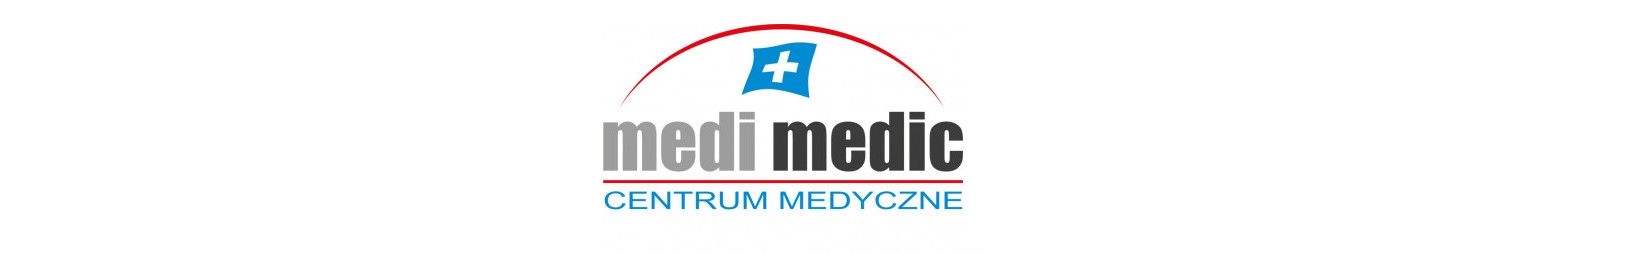 Medi Medic